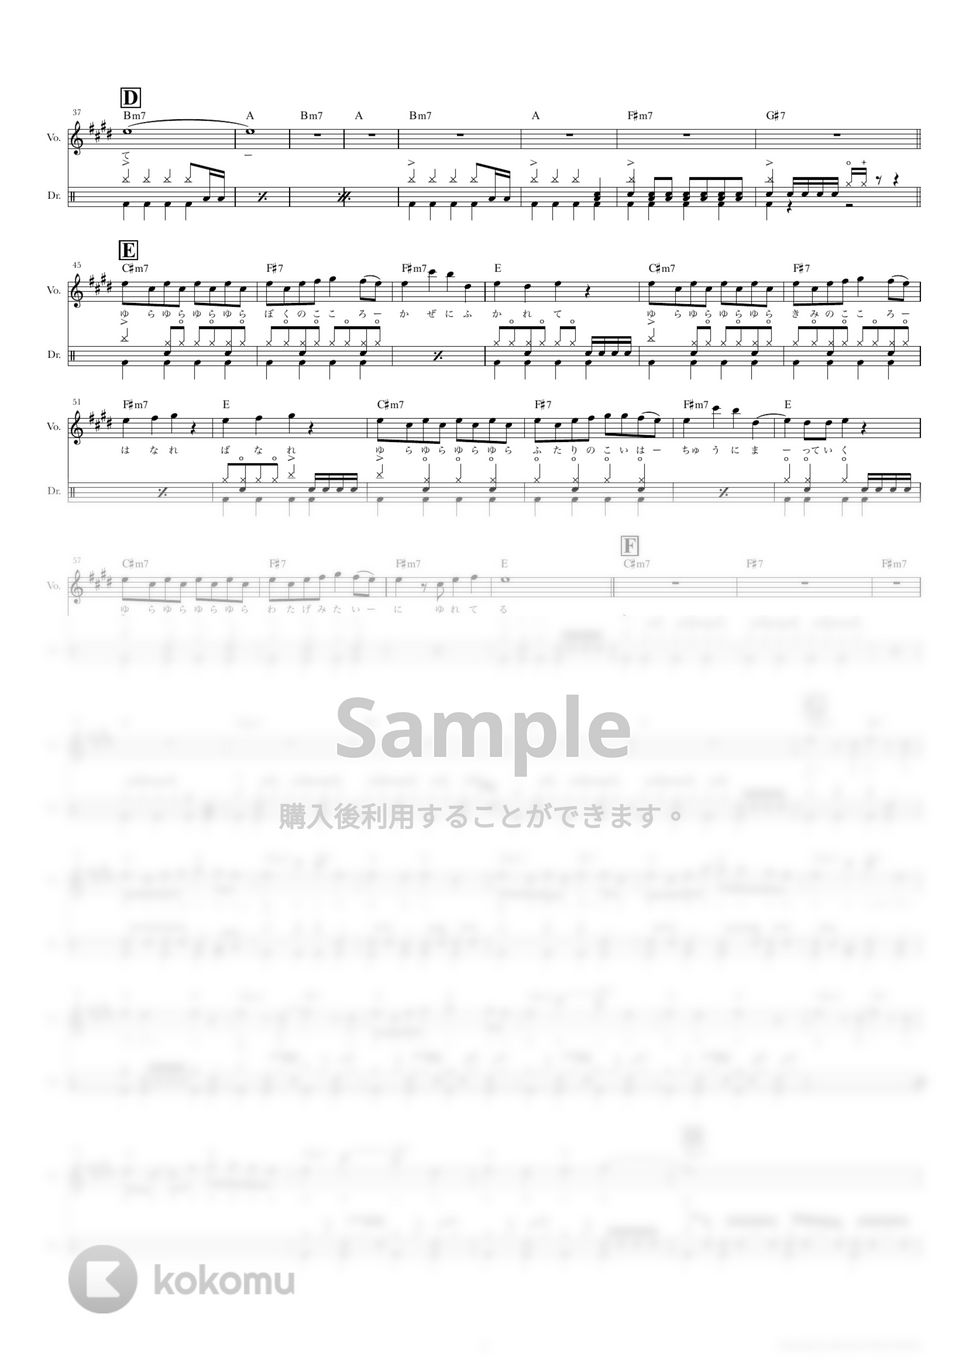 KANA-BOON - ないものねだり (ドラムスコア・歌詞・コード付き) by TRIAD GUITAR SCHOOL